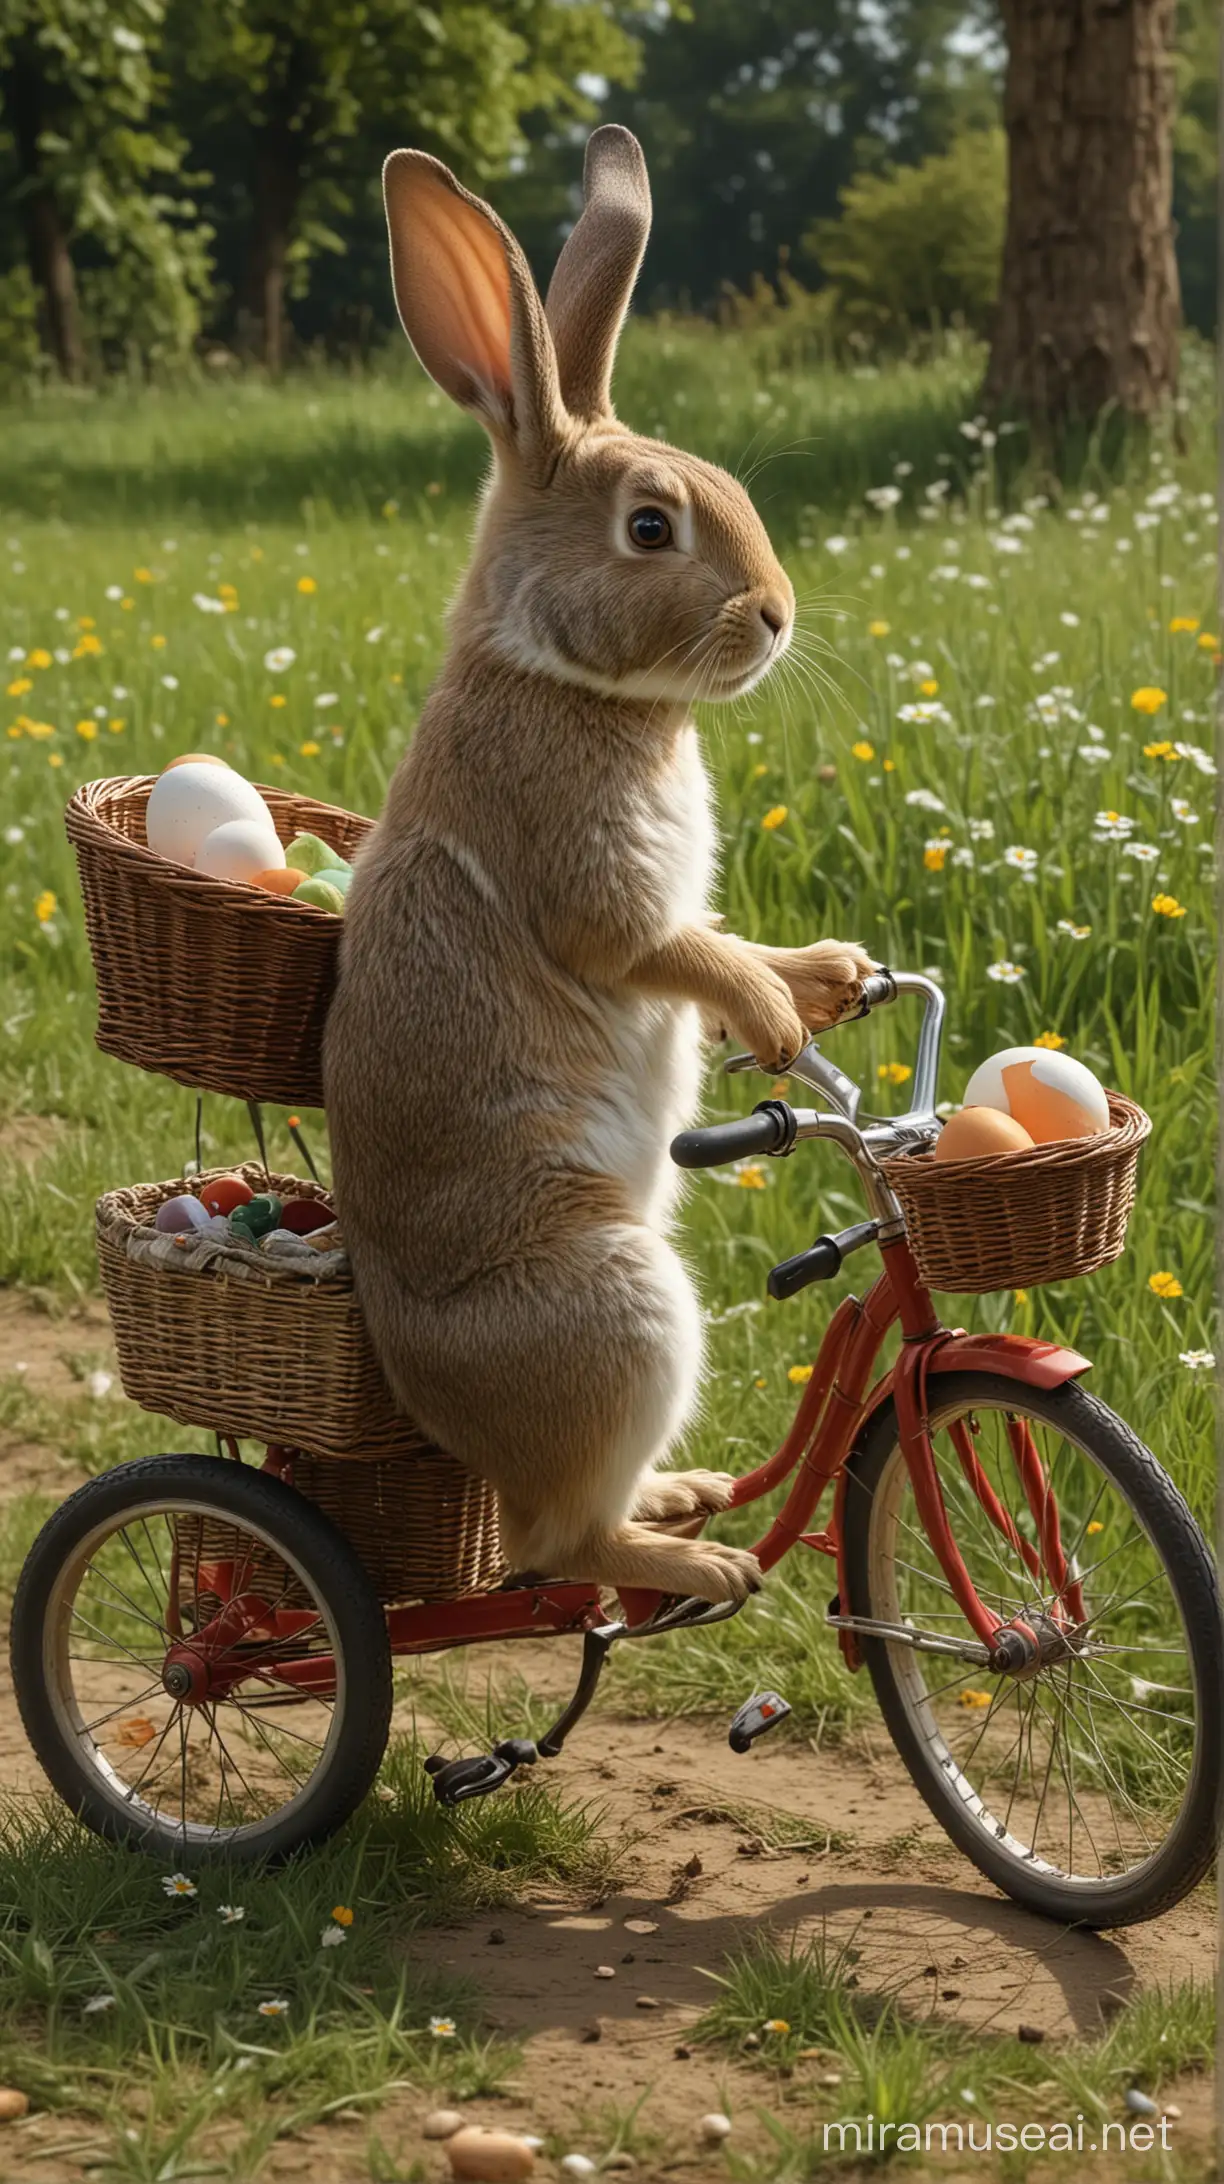 Çayırların üzerinde bir tavşan, 3 tekerli mibi bir bisiklet sürüyor, bisikletin arkasında taşıma sepeti var ve bu sepette büyük bir yumurta var. gerçek resim 8k tam detaylı